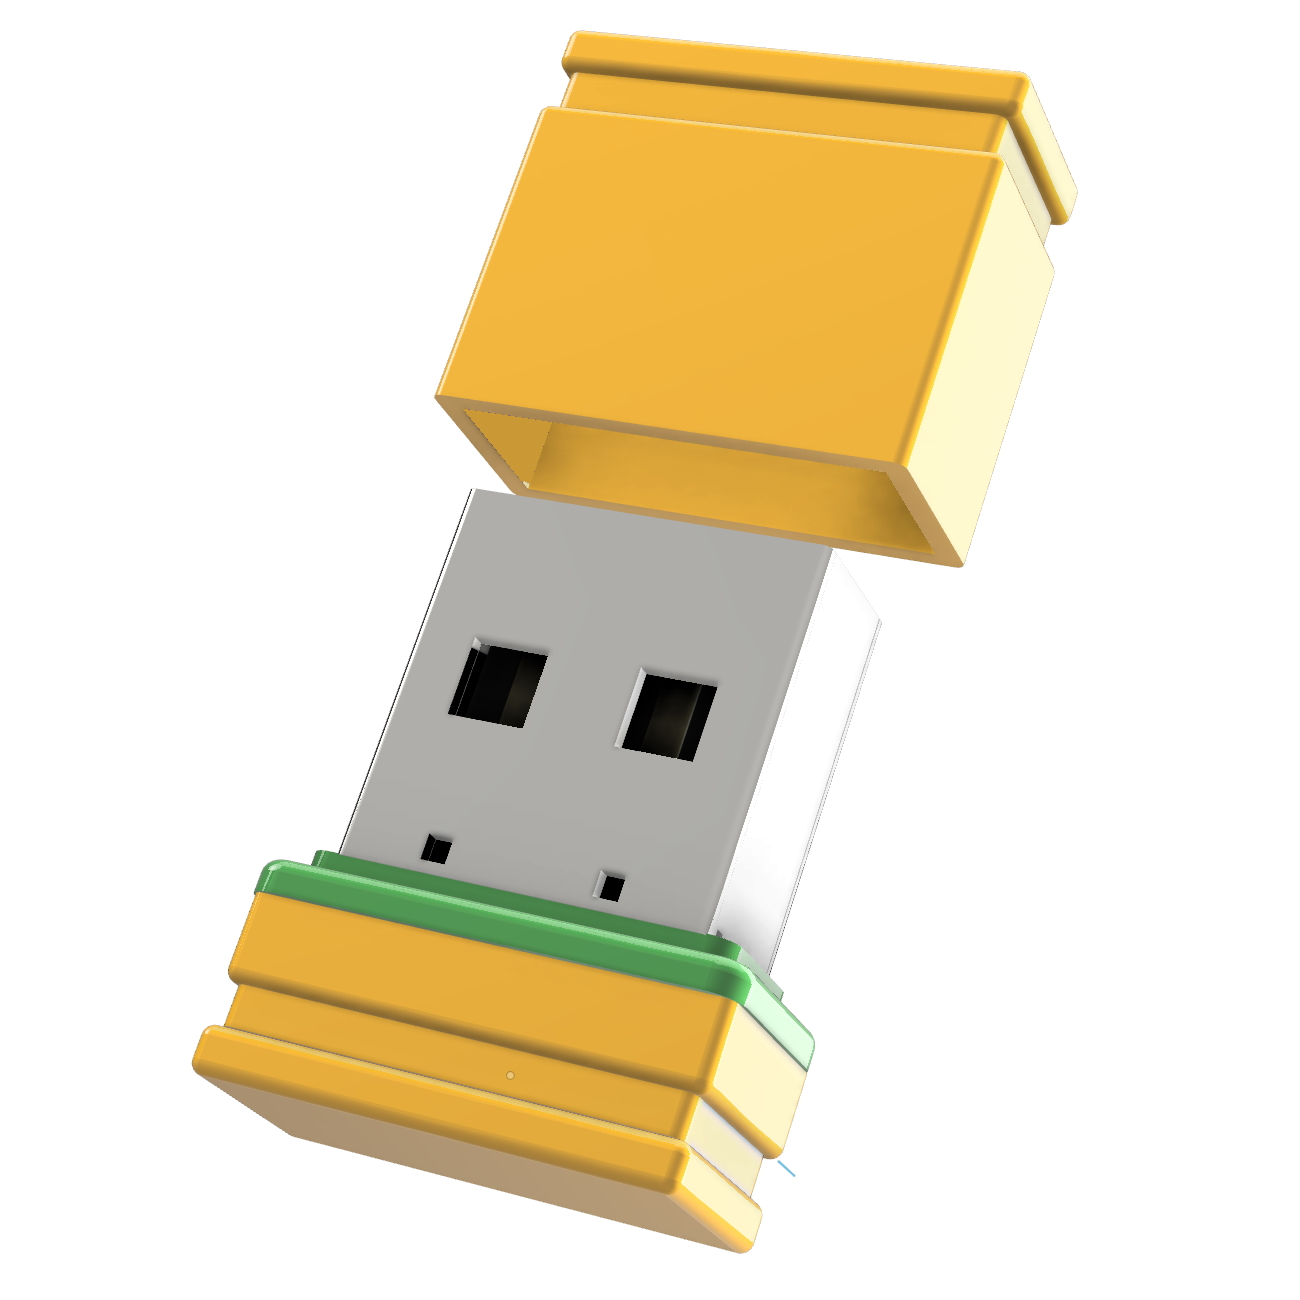 USB GERMANY Mini GB) 2 (Gelb/Grün, P1 USB-Stick ®ULTRA